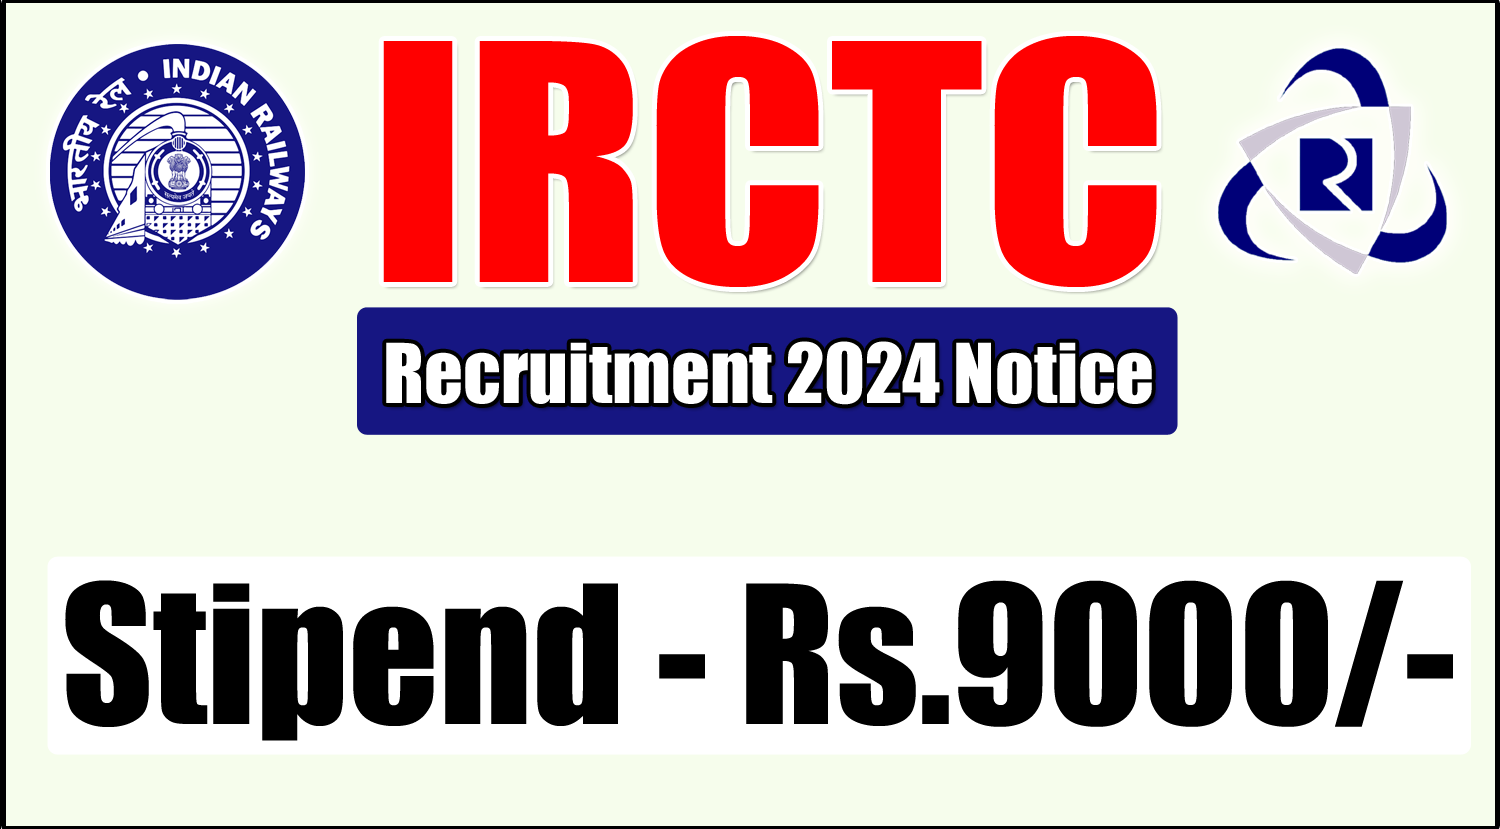 IRCTC-Kolkata-Recruitment